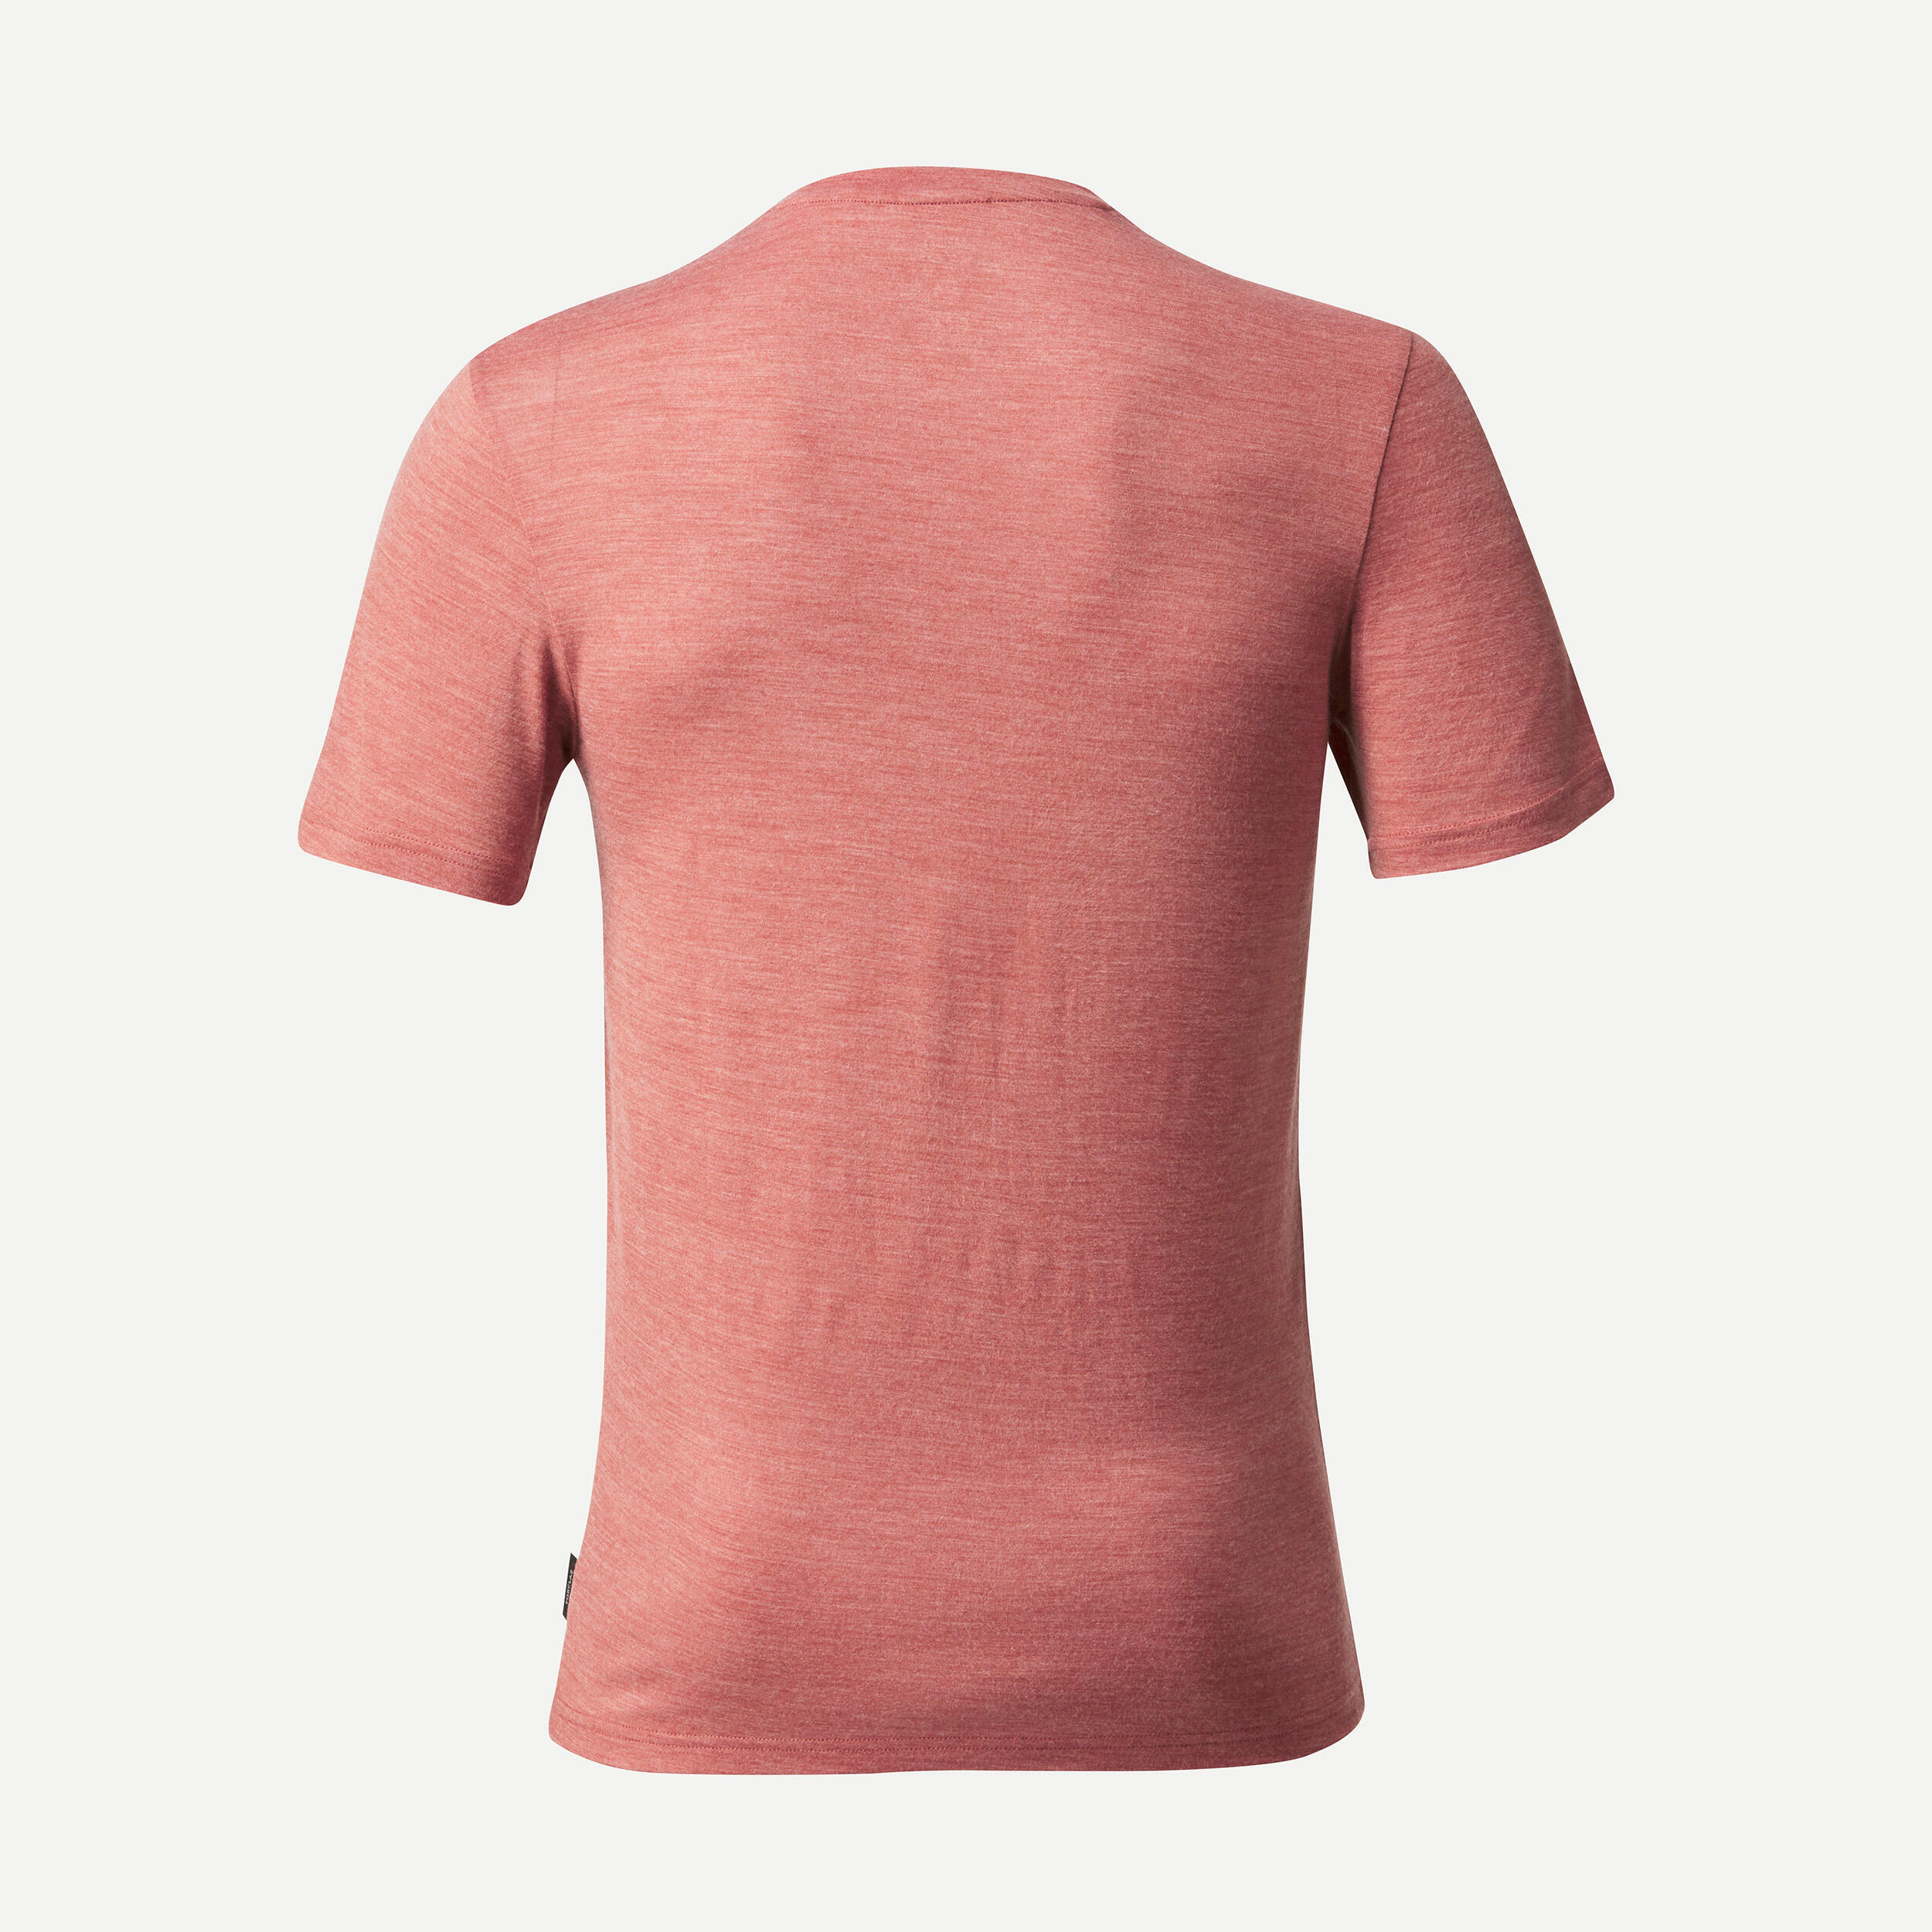 Trekking Travel Merino Wool T-Shirt - TRAVEL 100 Red 2/6